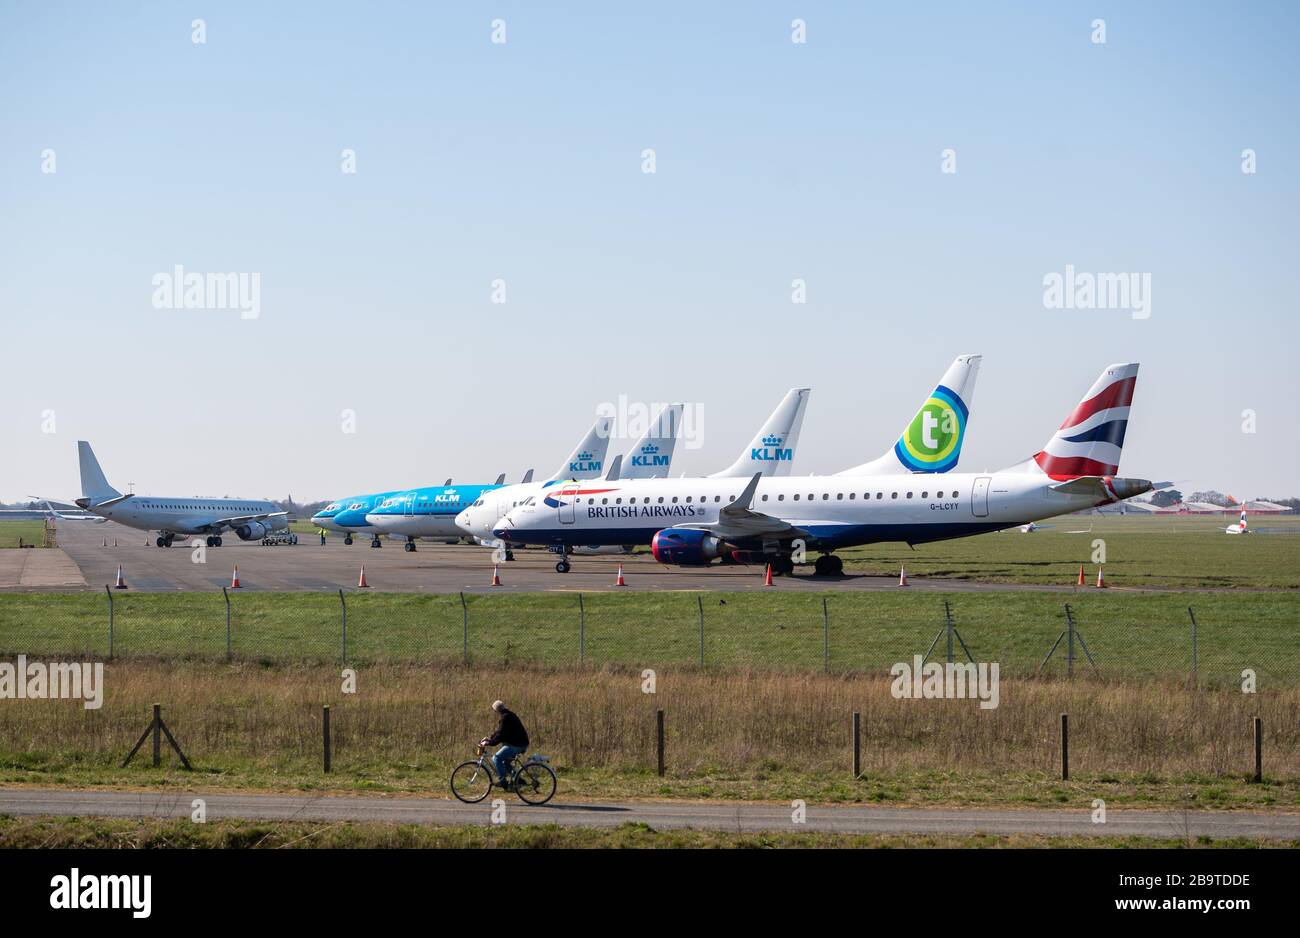 British Airways, KLM e Transavia hanno parcheggiato all'aeroporto di Norwich dopo la riduzione dei voli in mezzo a restrizioni di viaggio e un enorme calo della domanda a causa della pandemia di coronavirus. Foto Stock